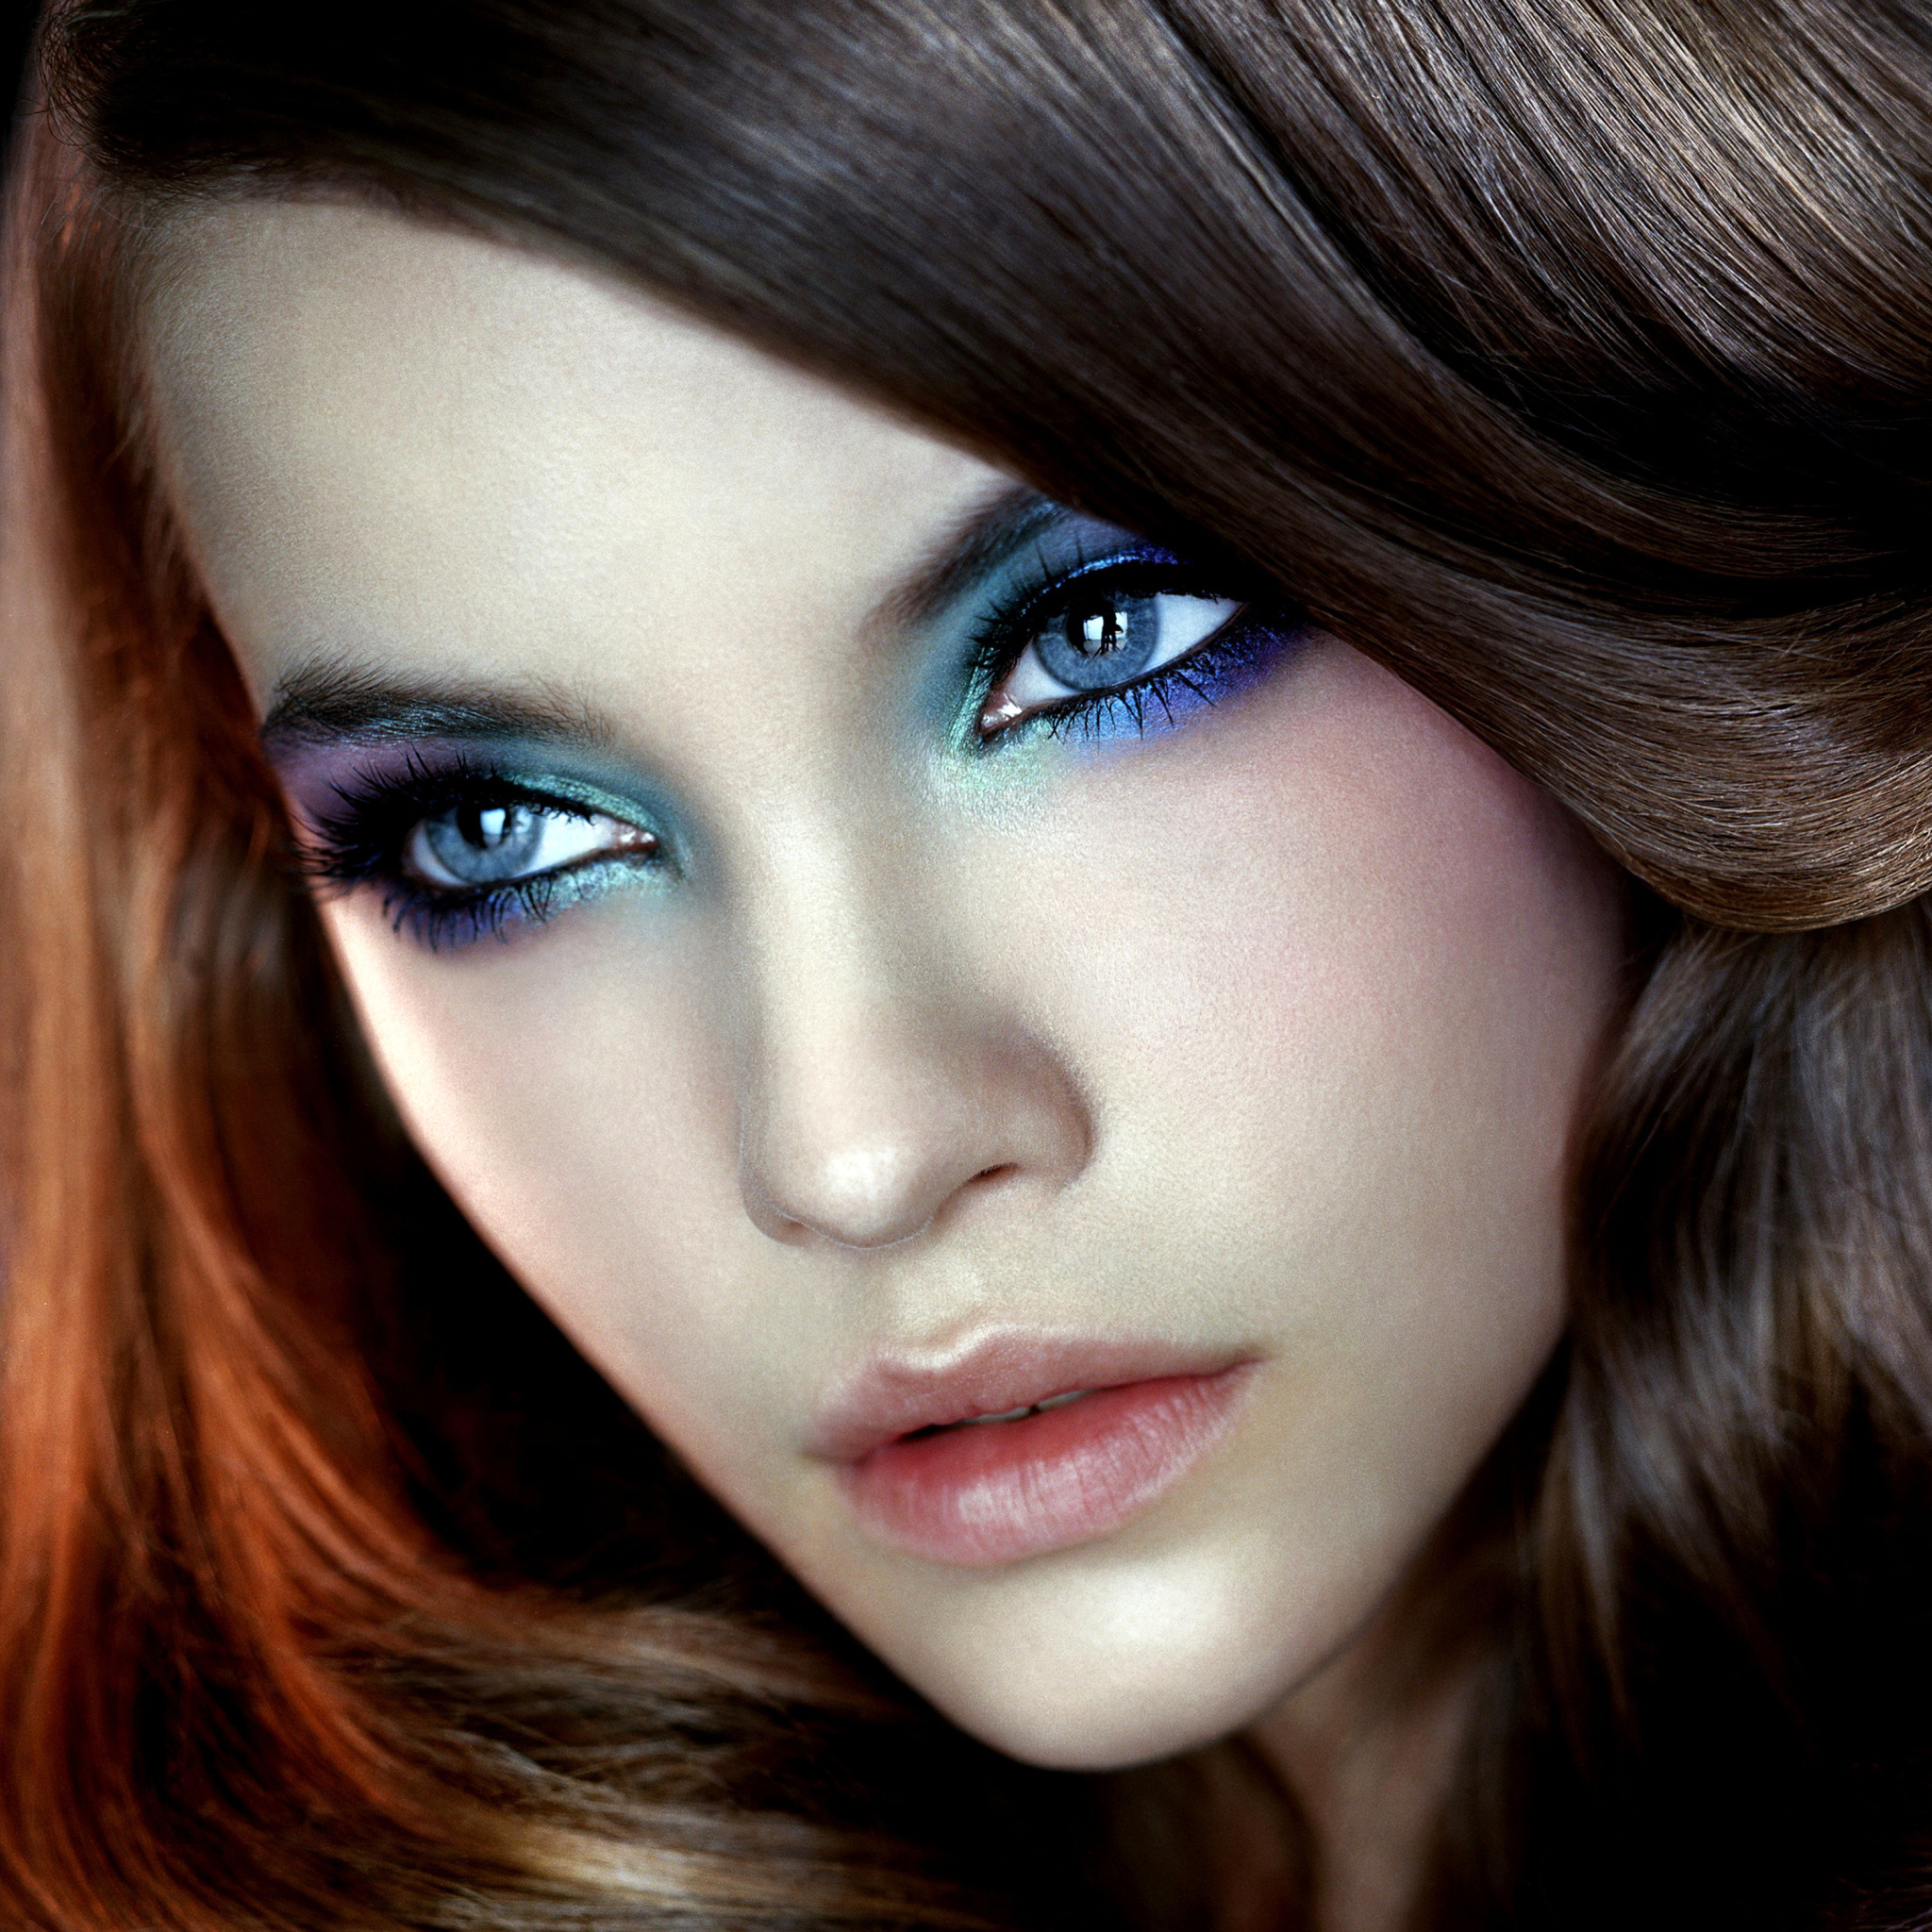 Голубые глаза прекрасны. Барбара Палвин. Барбара Палвин с голубыми глазами. Барбара Палвин с синим макияжем. Барбара Палвин накрашенная.